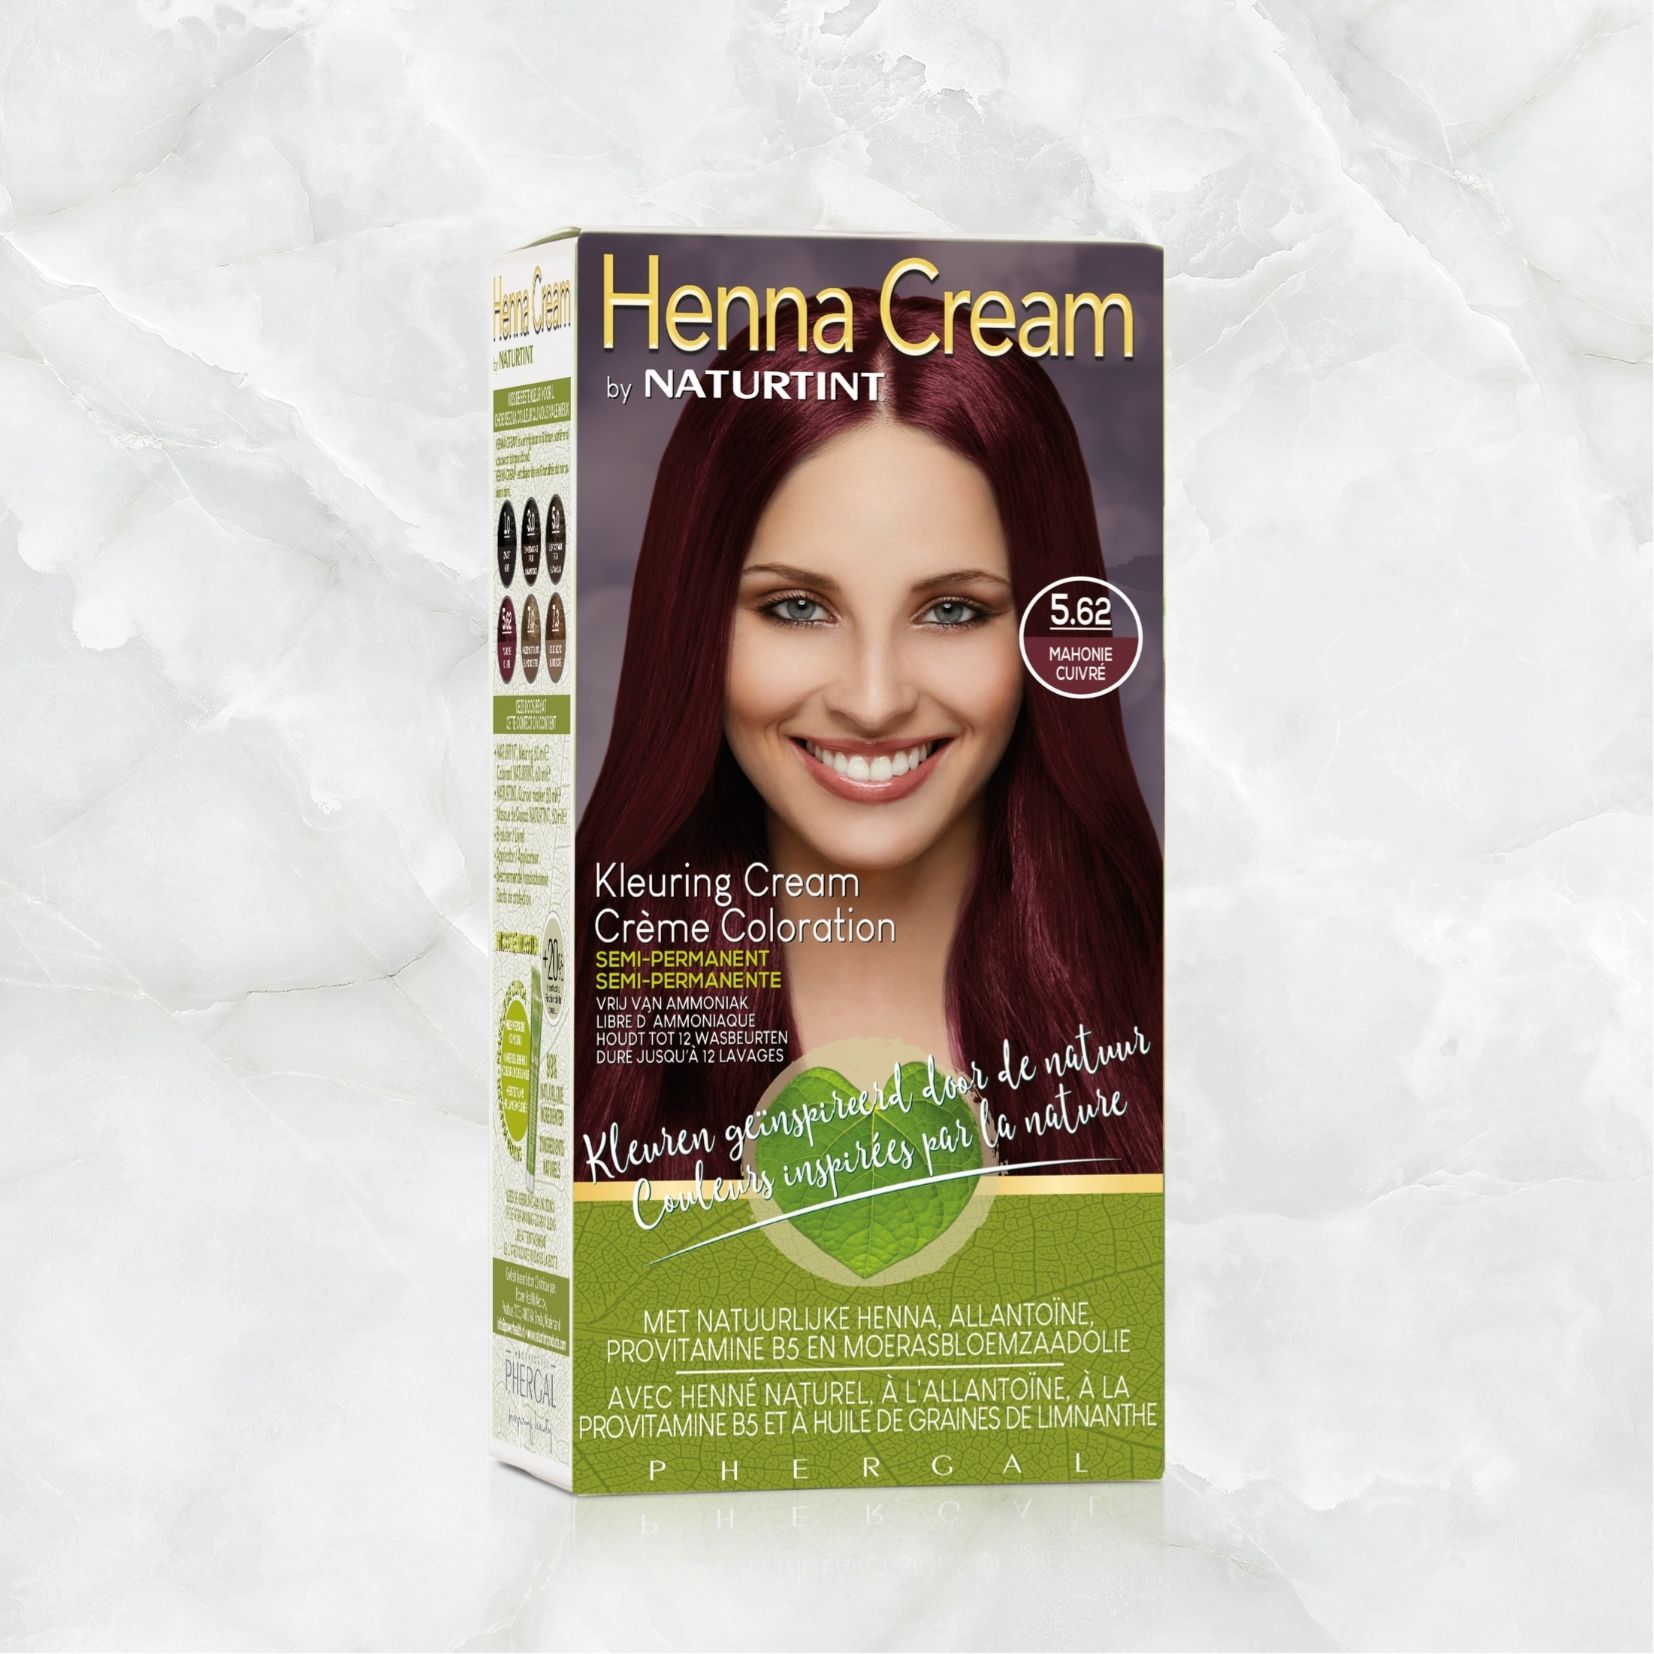 Toevlucht Baron blaas gat Henna Cream 5.62 (Semi-Permanente Haarkleuring) - Power Health shop